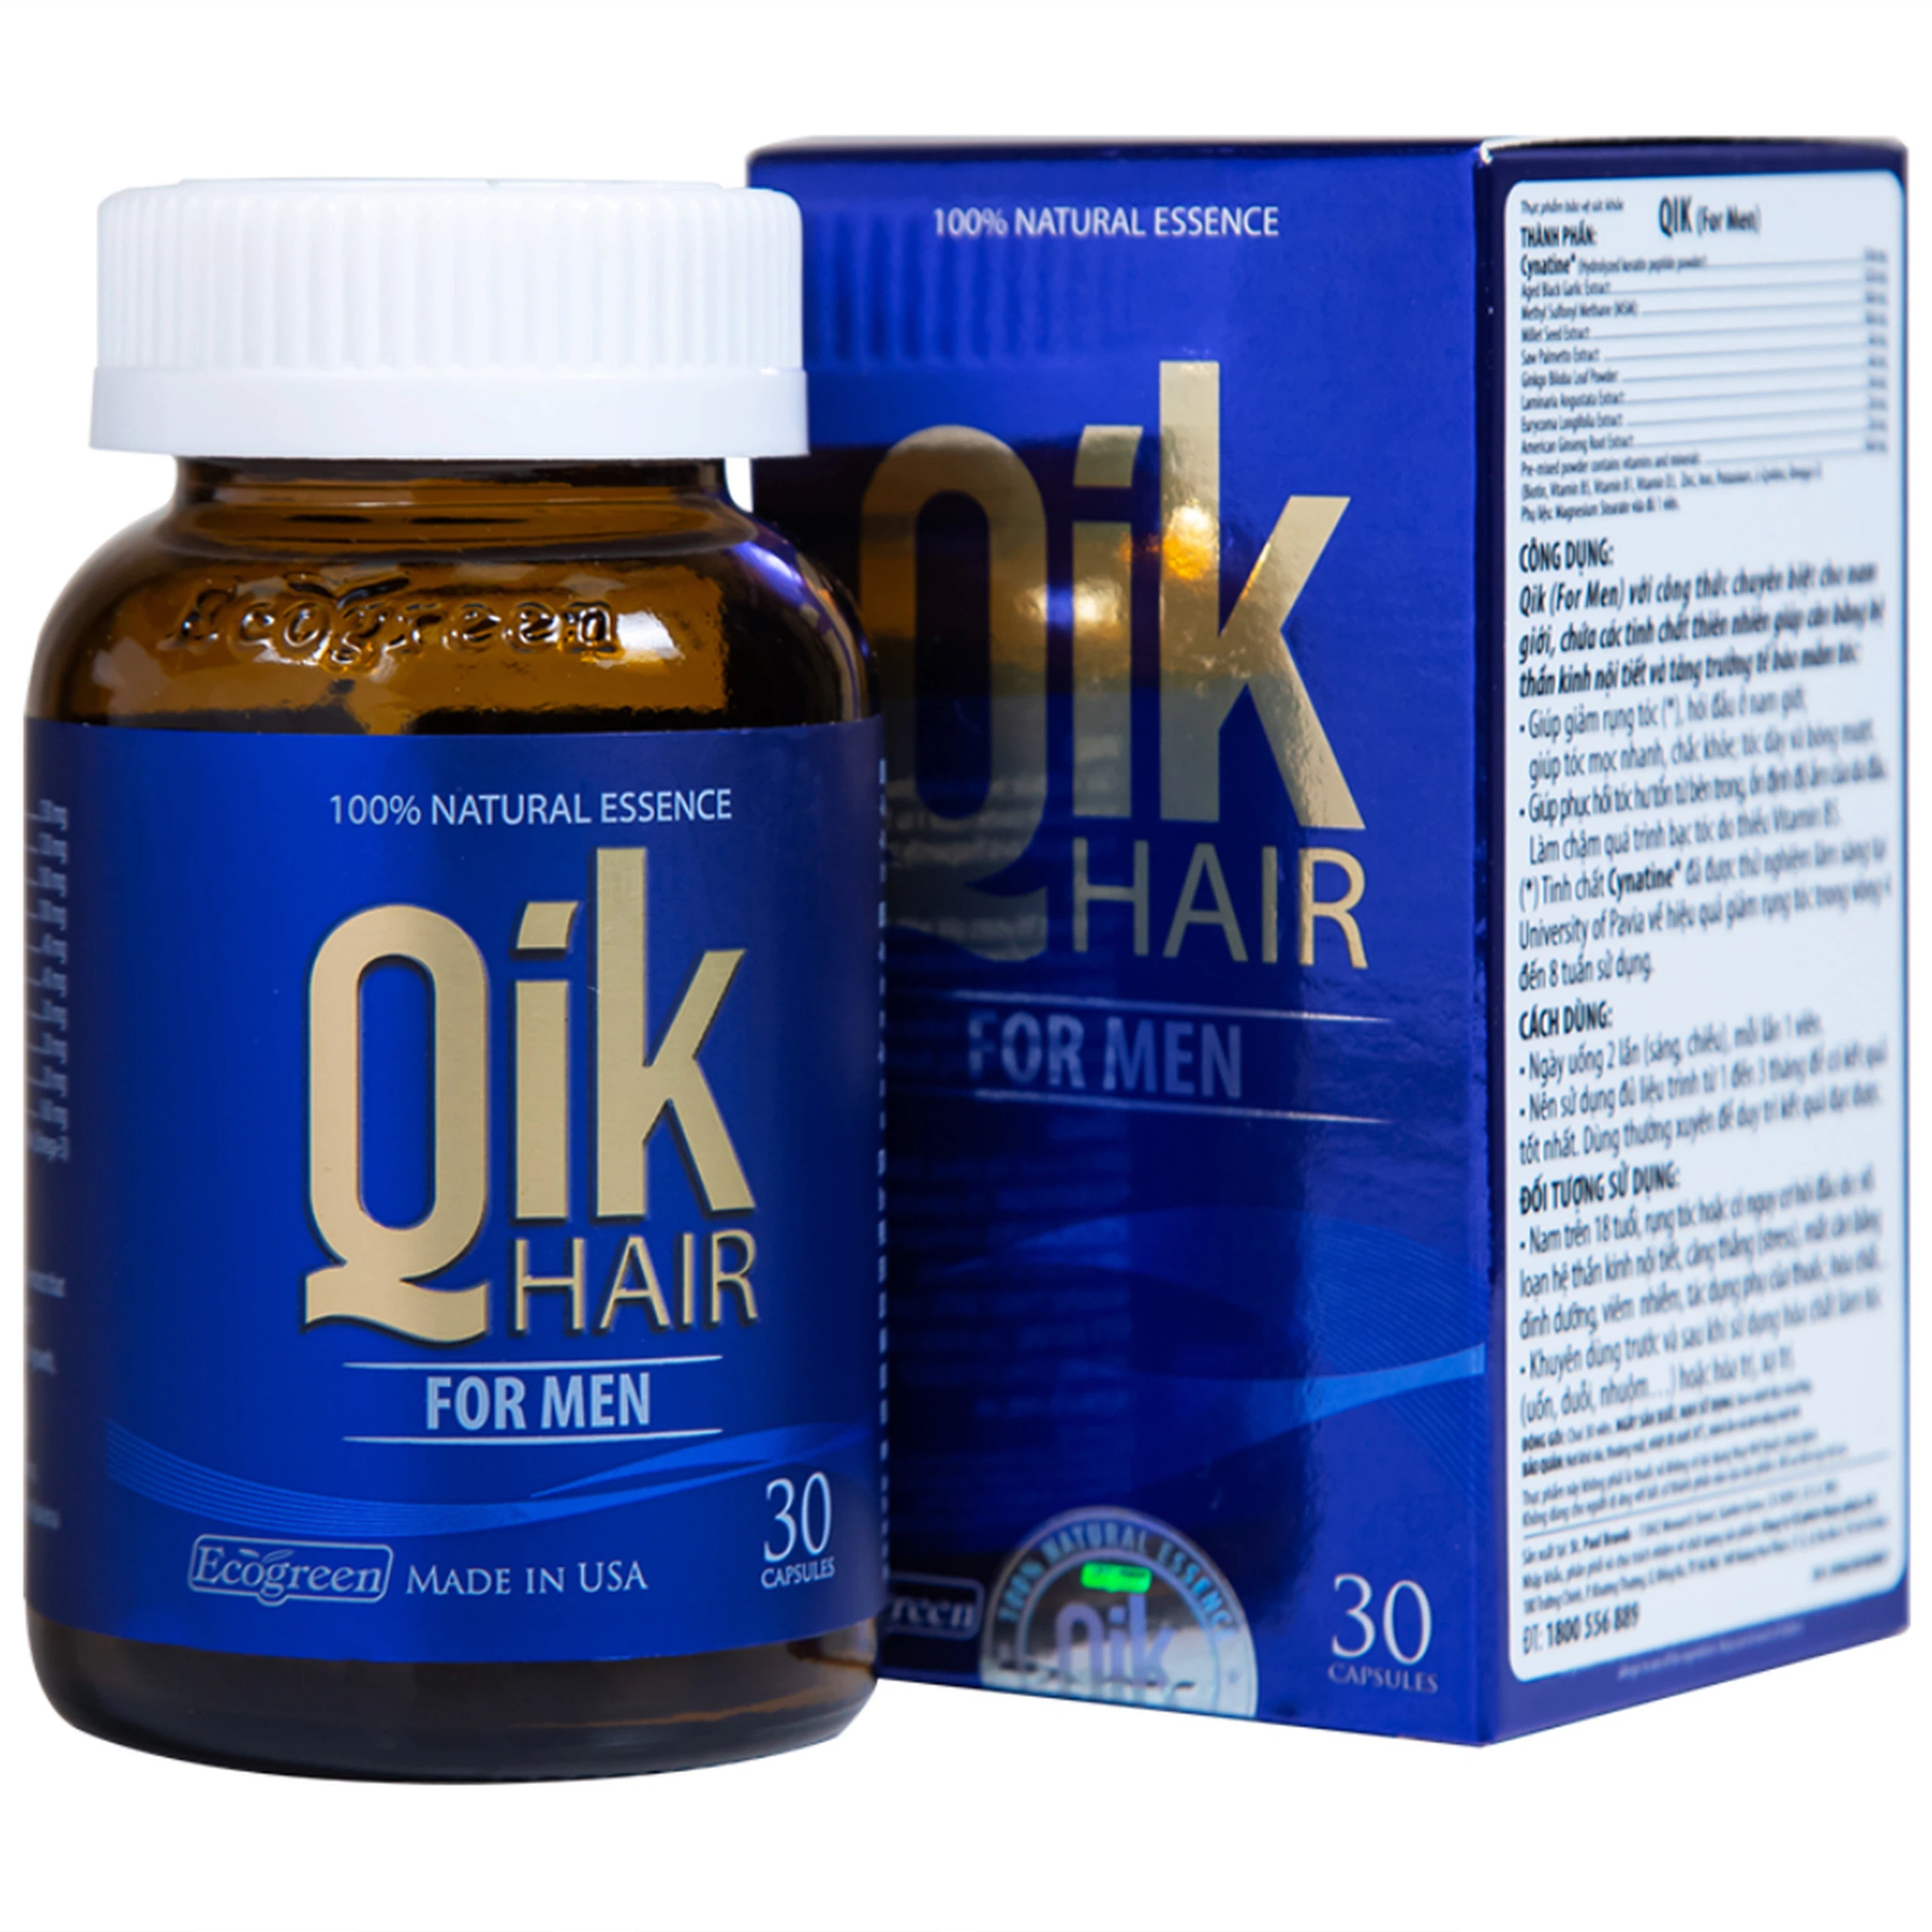 Viên uống Qik Hair For Men Ecogreen giúp giảm rụng tóc, hối đầu ở nam giới (30 viên)